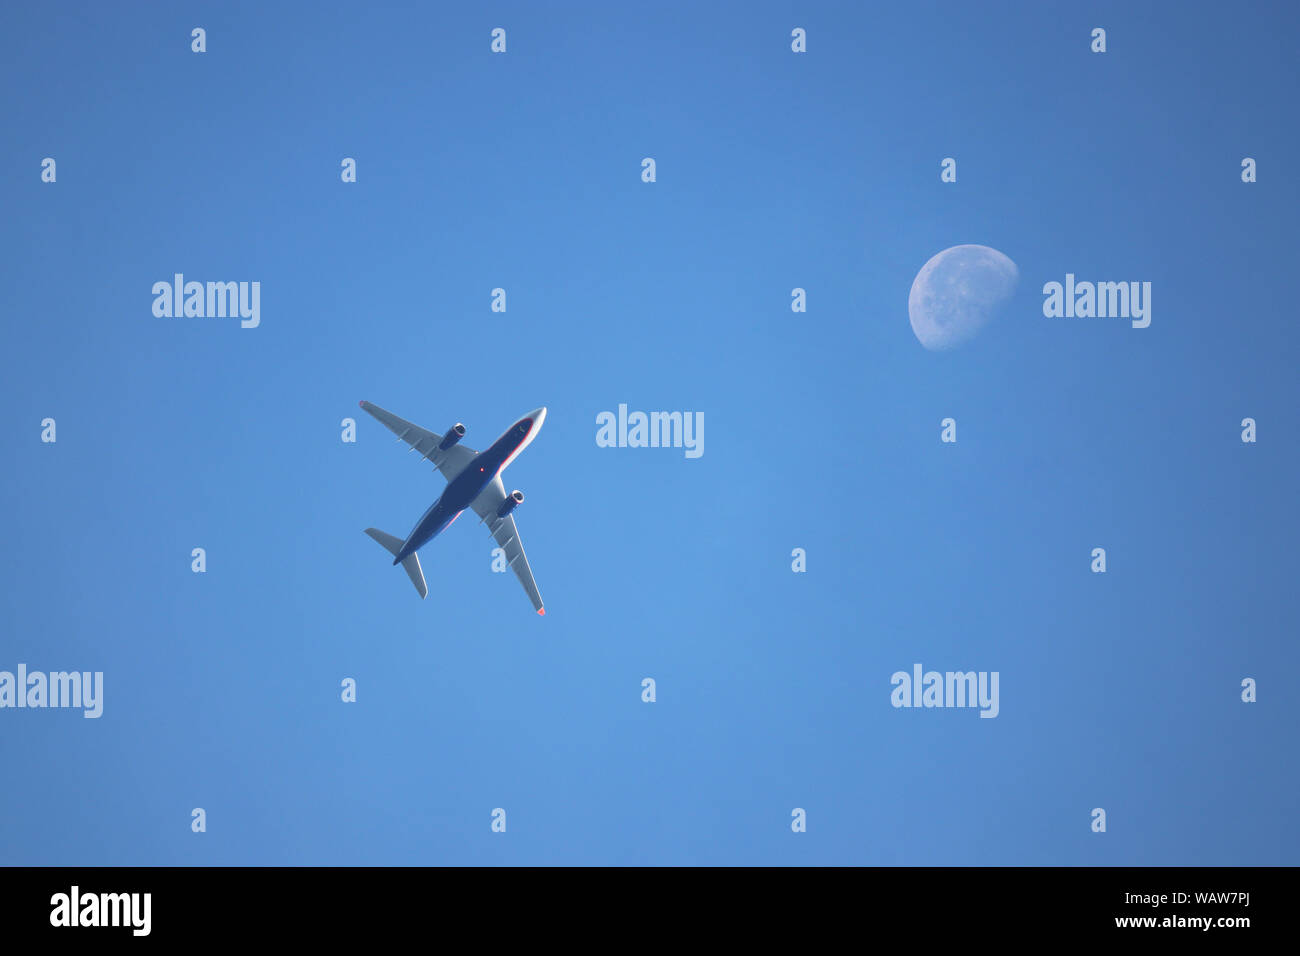 Flugzeug fliegen im blauen Himmel im Hintergrund des abnehmenden Mondes in den Morgen. Kommerzielle zweimotorige Flugzeug, Flugverkehr Konzept Stockfoto